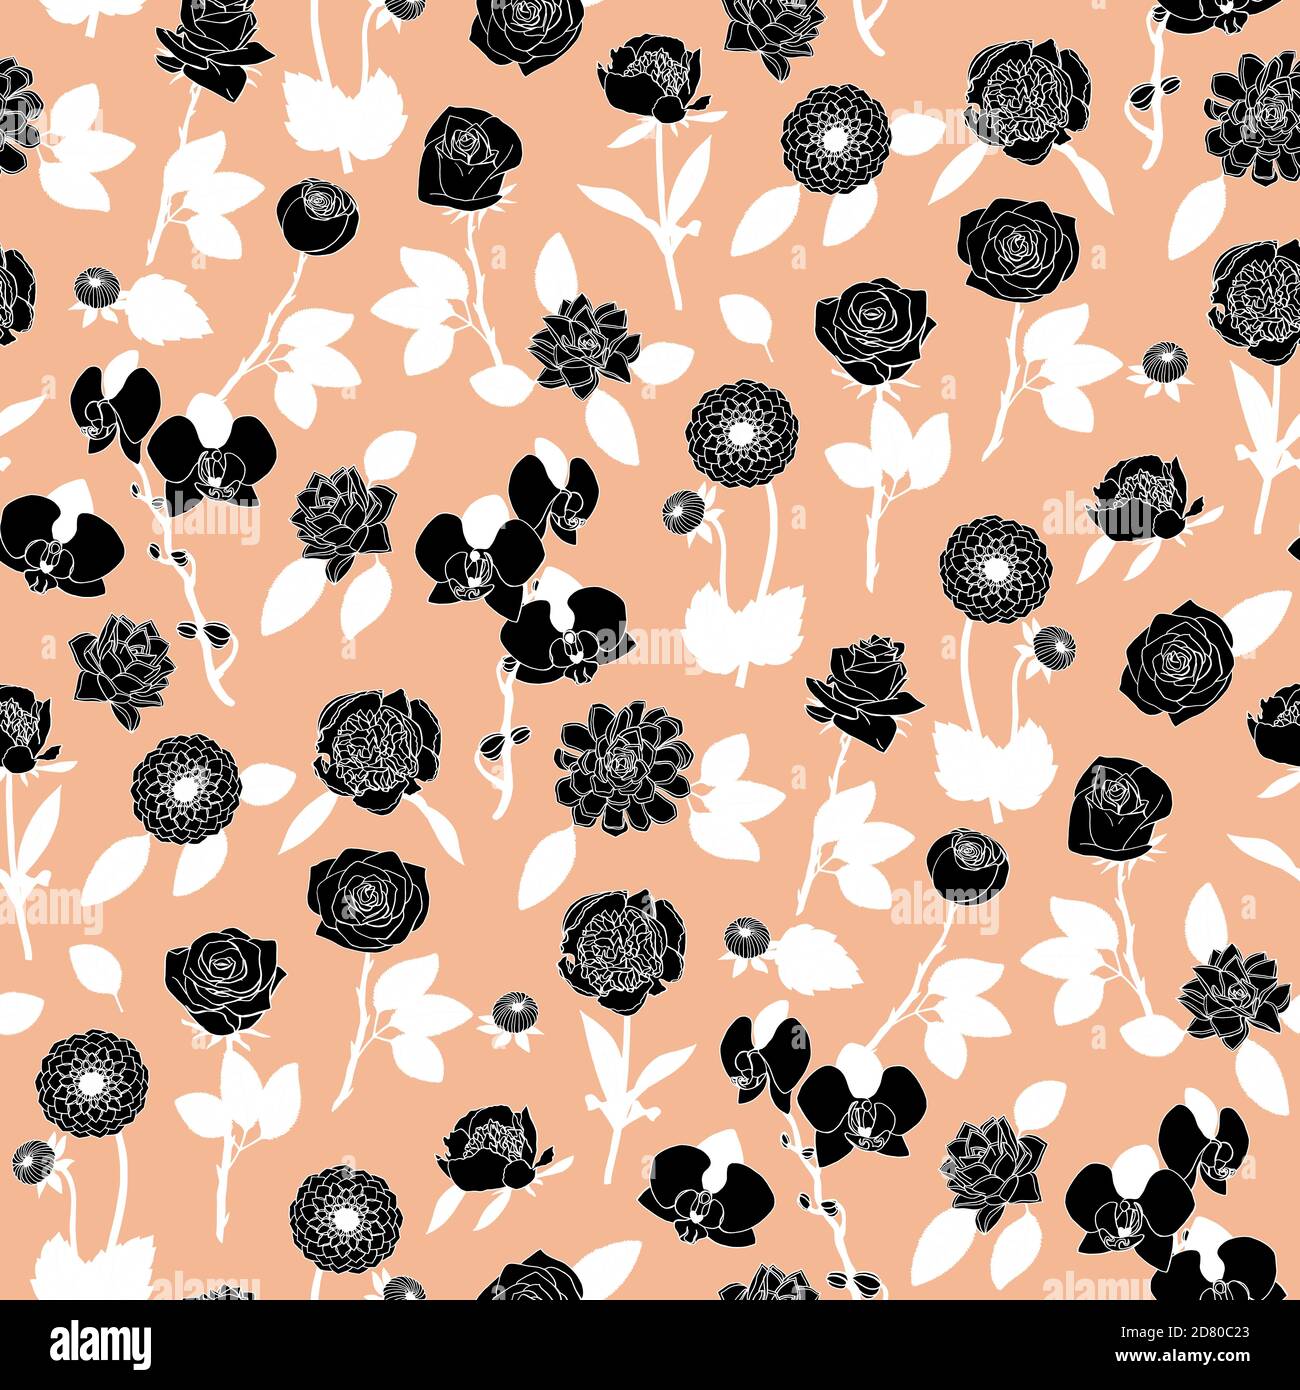 Schwarz-weiß florales Nahtloses Muster mit handgezeichneten Blumen auf rosa Hintergrund. Stock-Vektor Stock Vektor